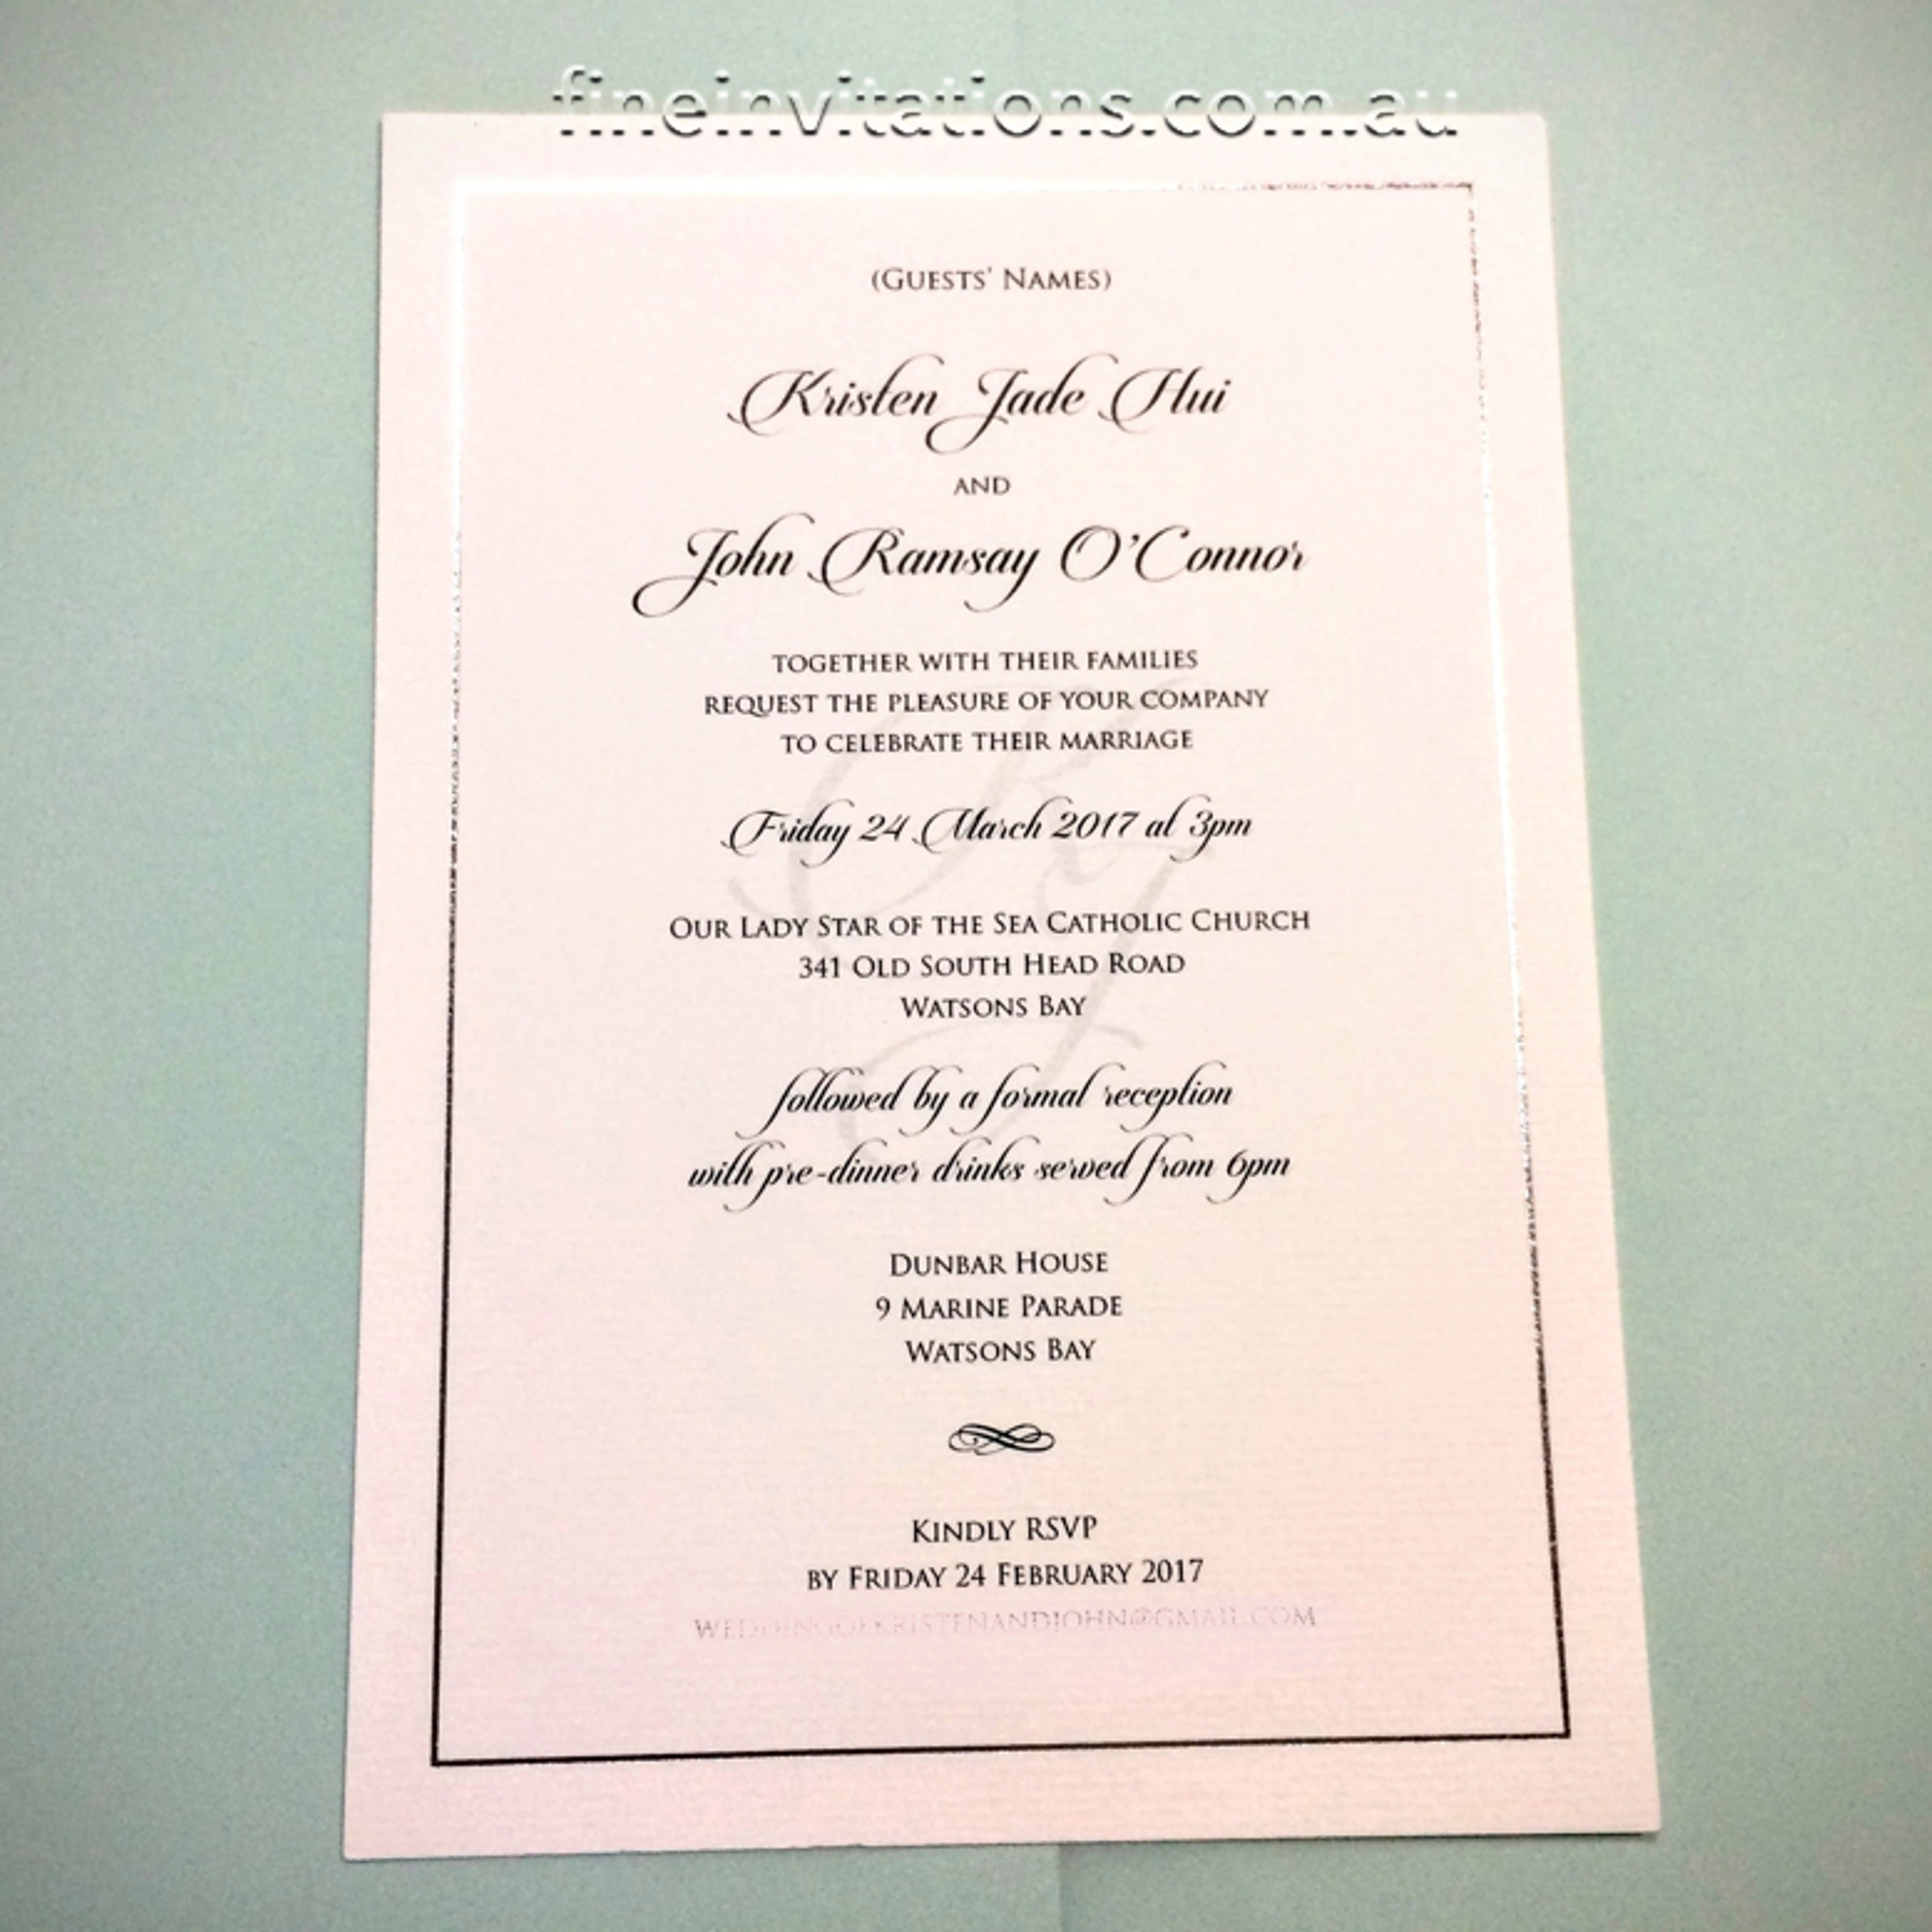 Formal A5 wedding invitation, Sydney, silver foil, elegant, watermark